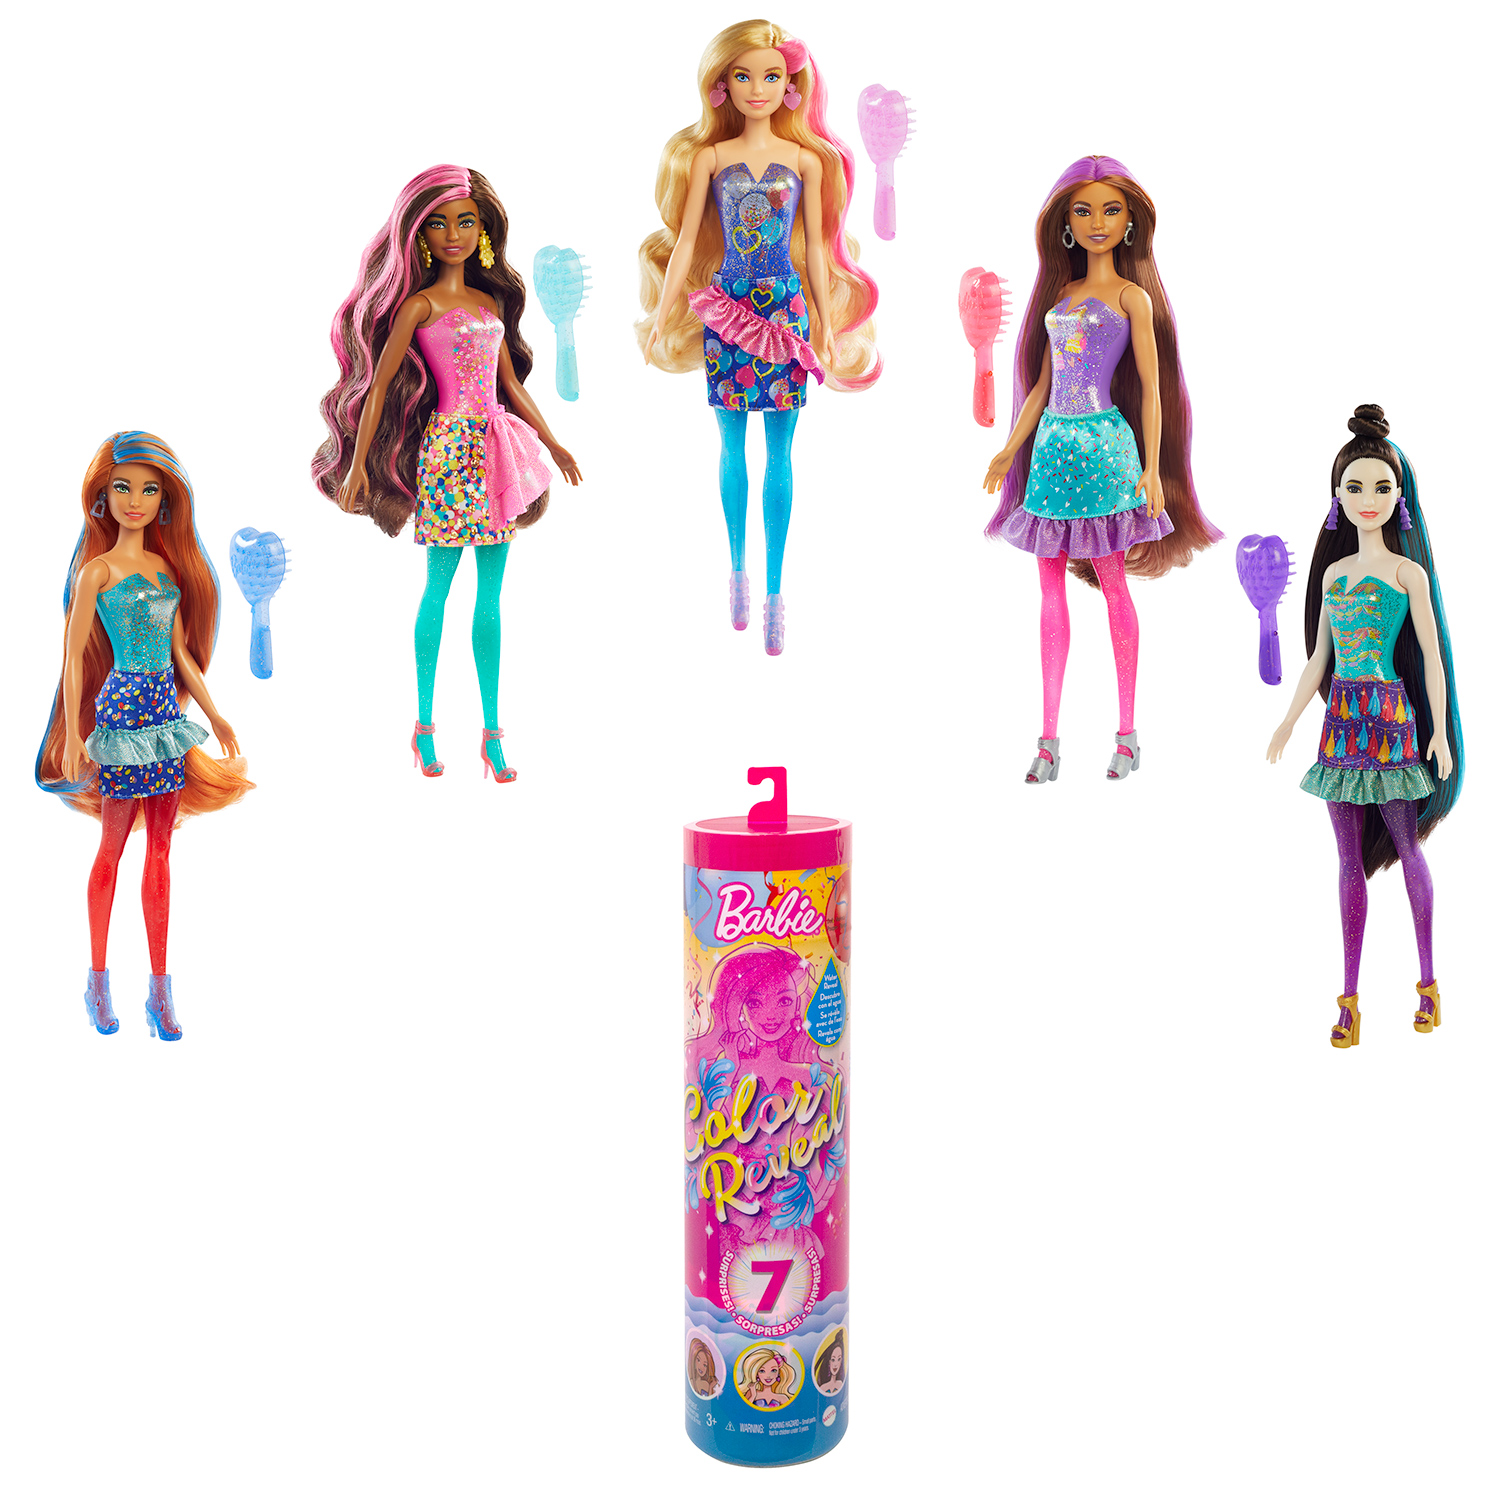 Mattel - Barbie - Color Reveal, doll with 7 surprises